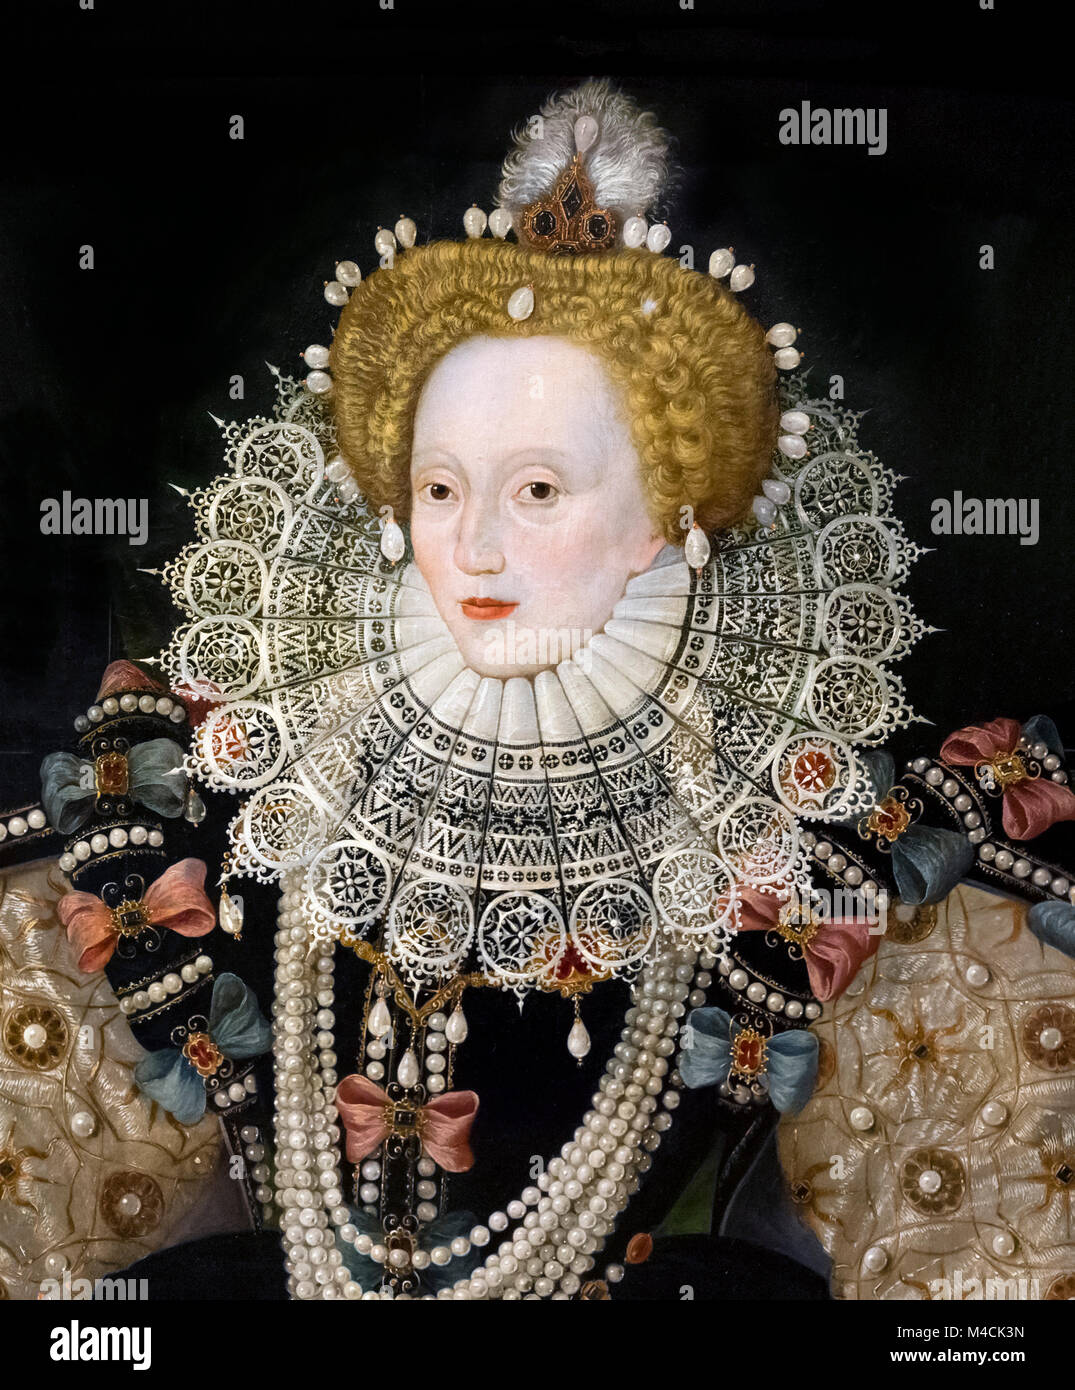 Elizabeth I, l'Armada 'Portrait'. Portrait de la Reine Elizabeth I par un artiste inconnu de l'école anglaise, huile sur panneau, c.1588. Détail d'une grande peinture, M4CK3P. Banque D'Images